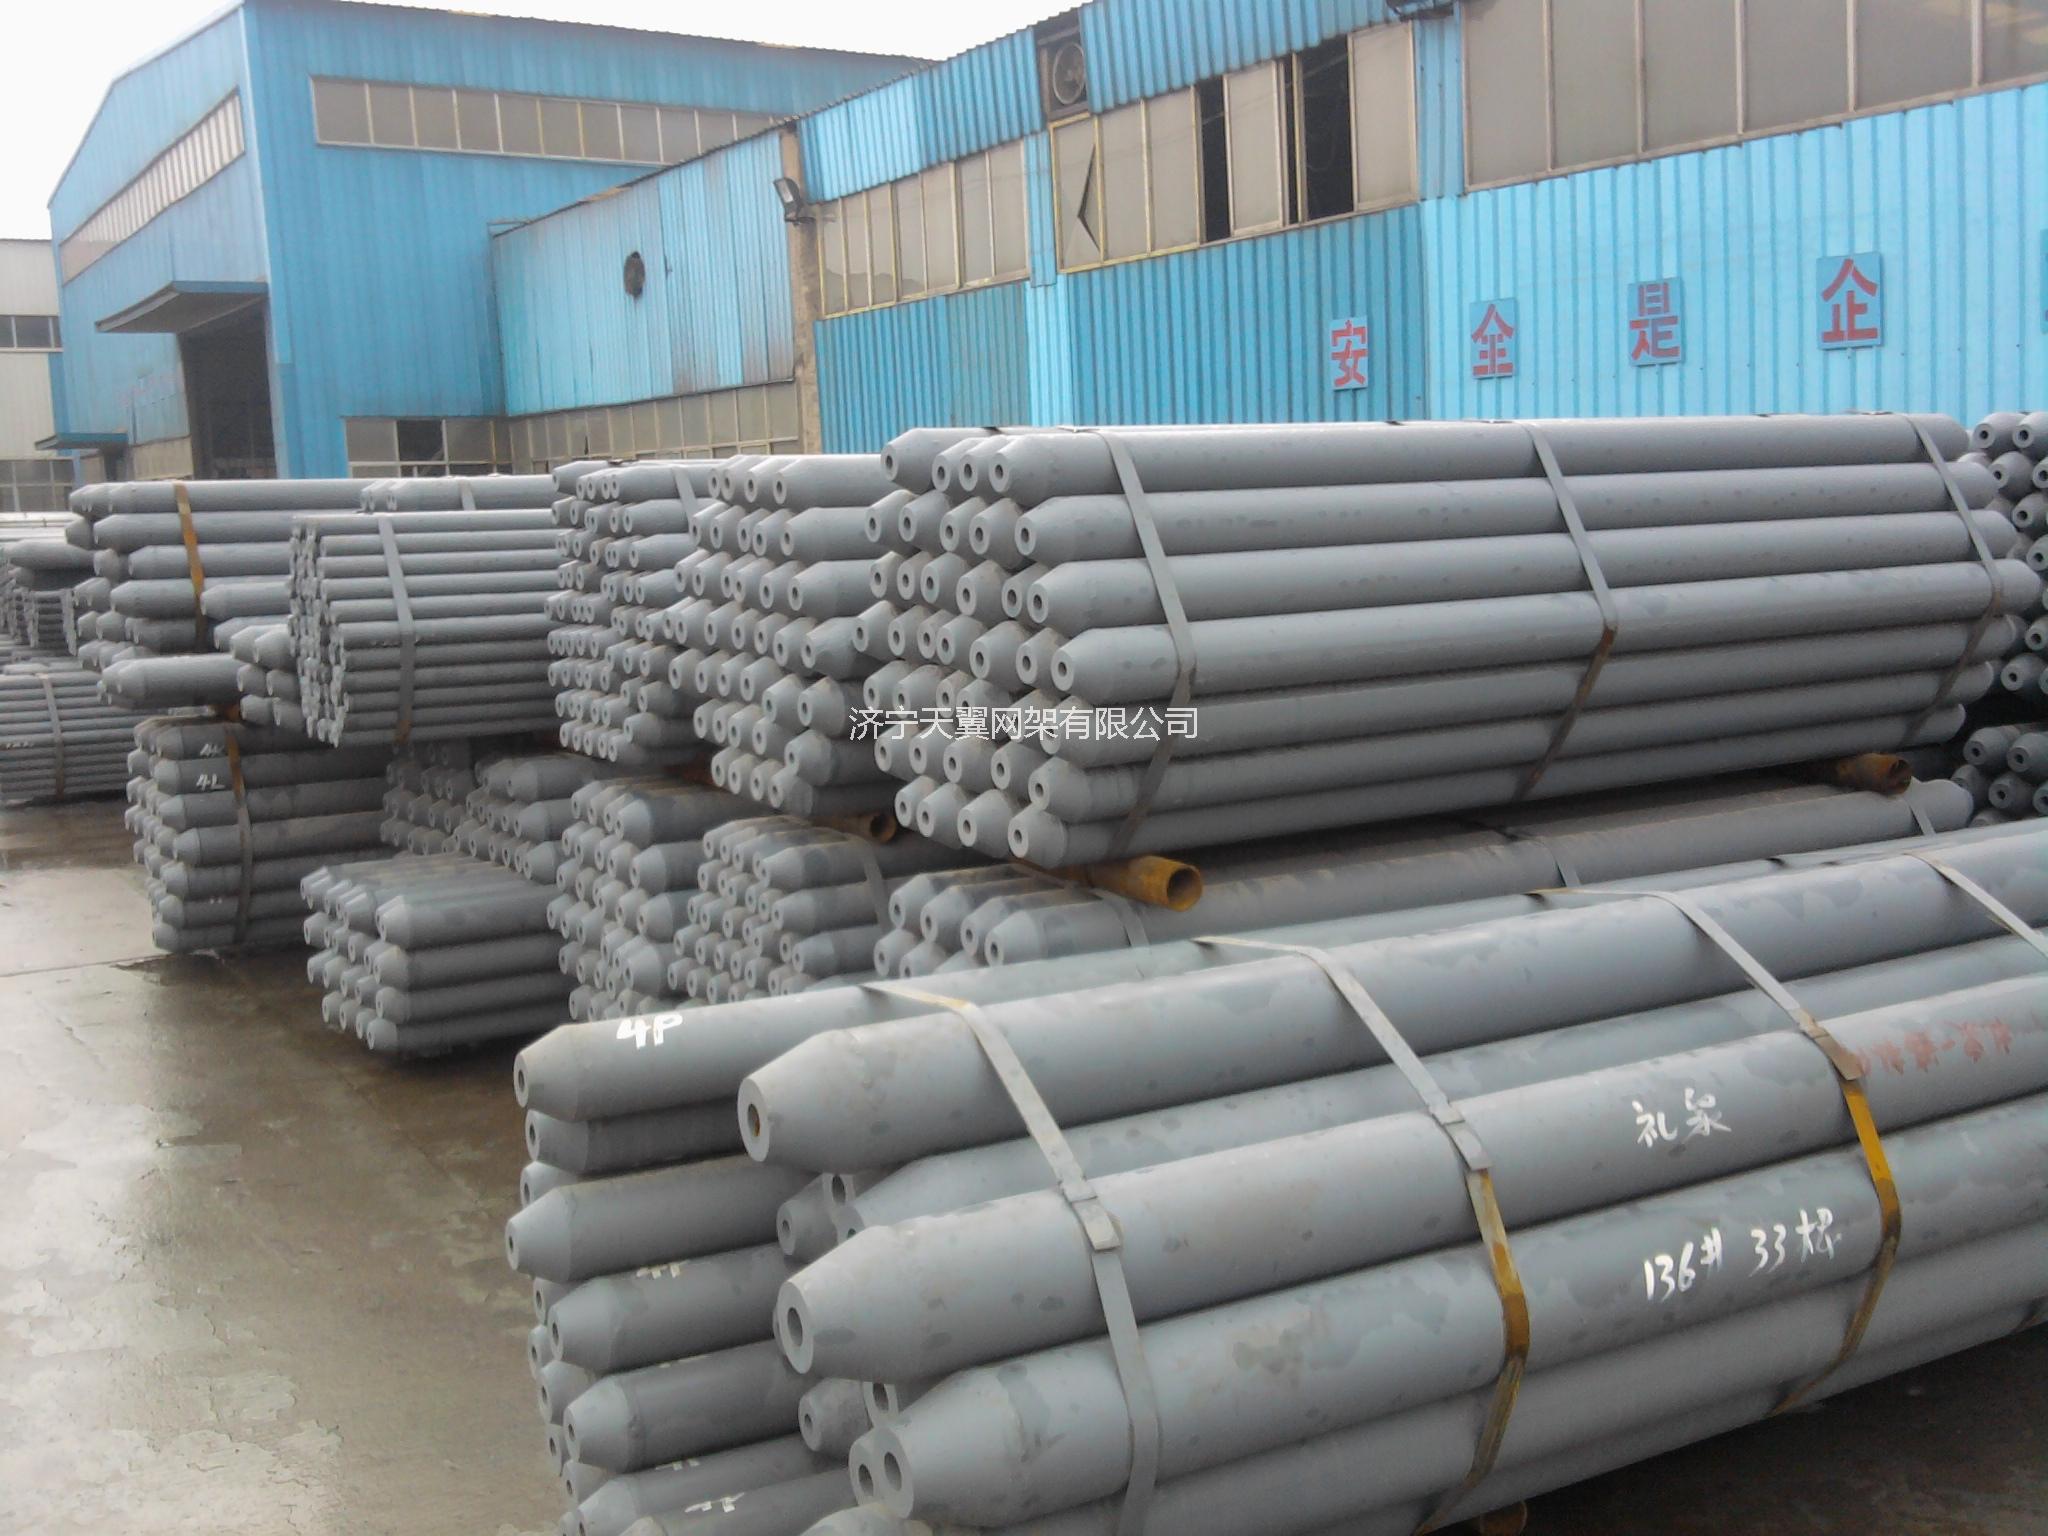 济宁市国家一级钢结构专项施工资质企业厂家国家一级钢结构专项施工资质企业